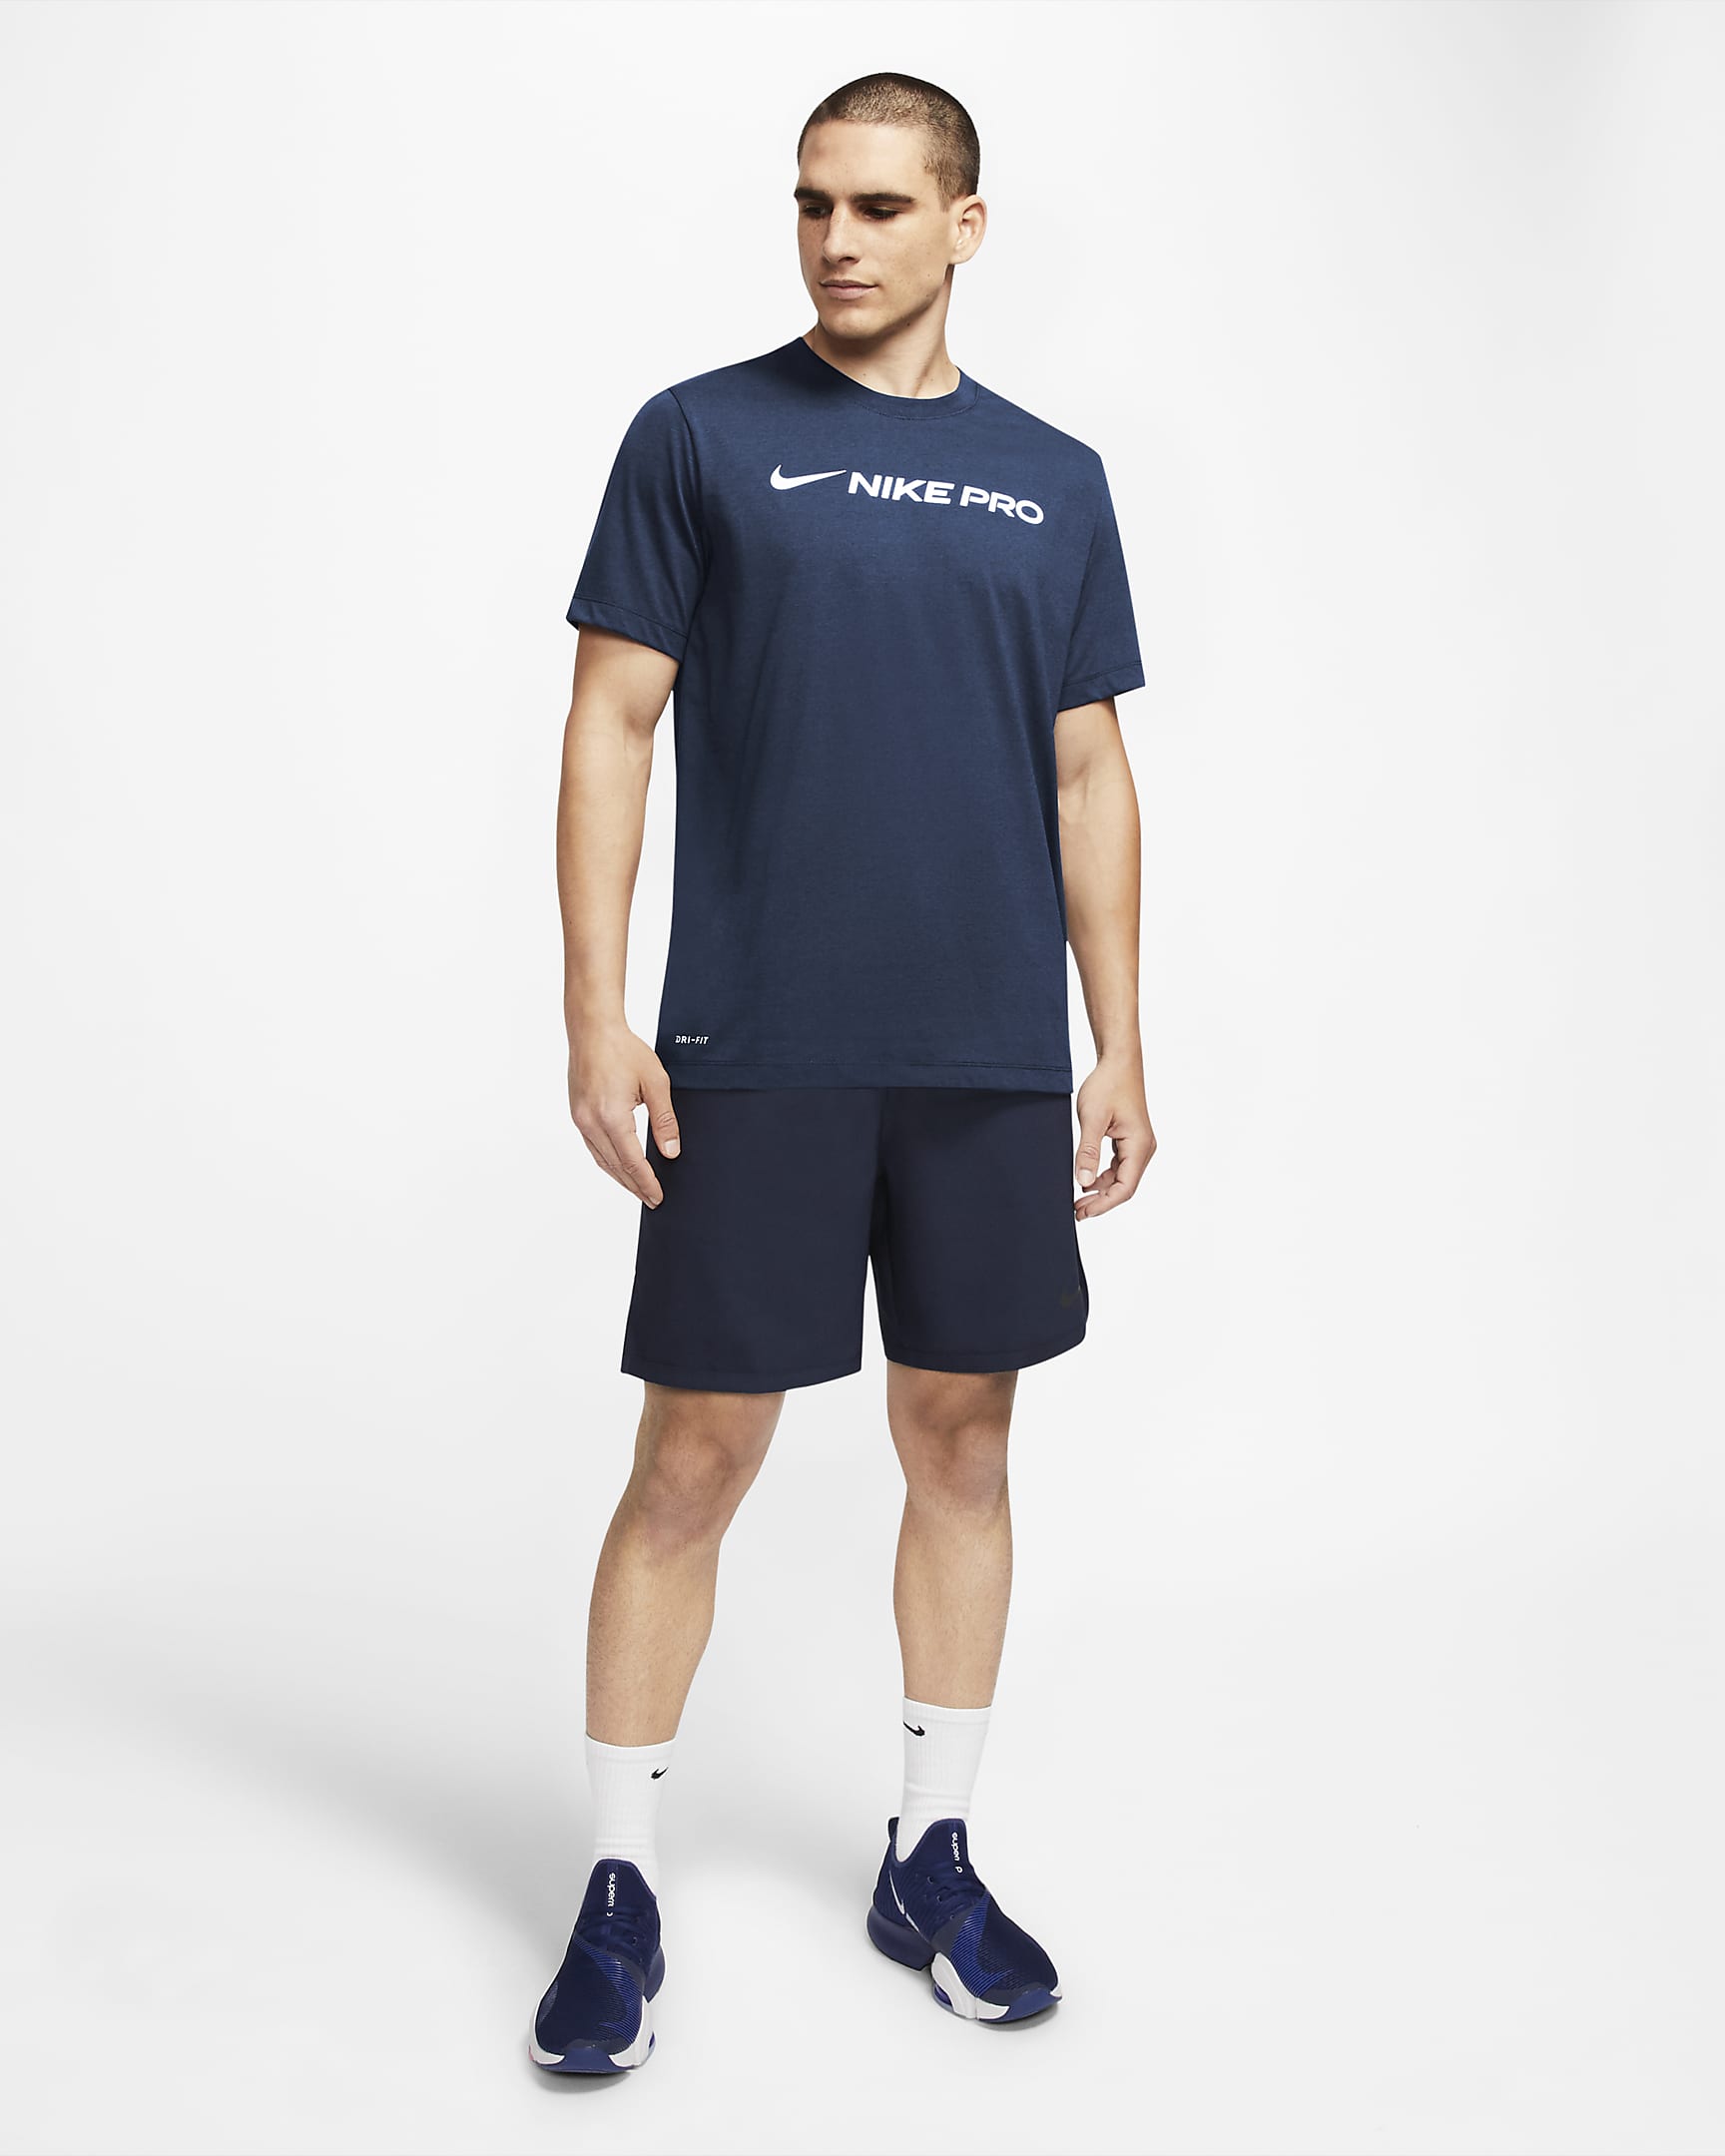 Nike Dri-FIT trenings-T-skjorte til herre - Mystic Navy